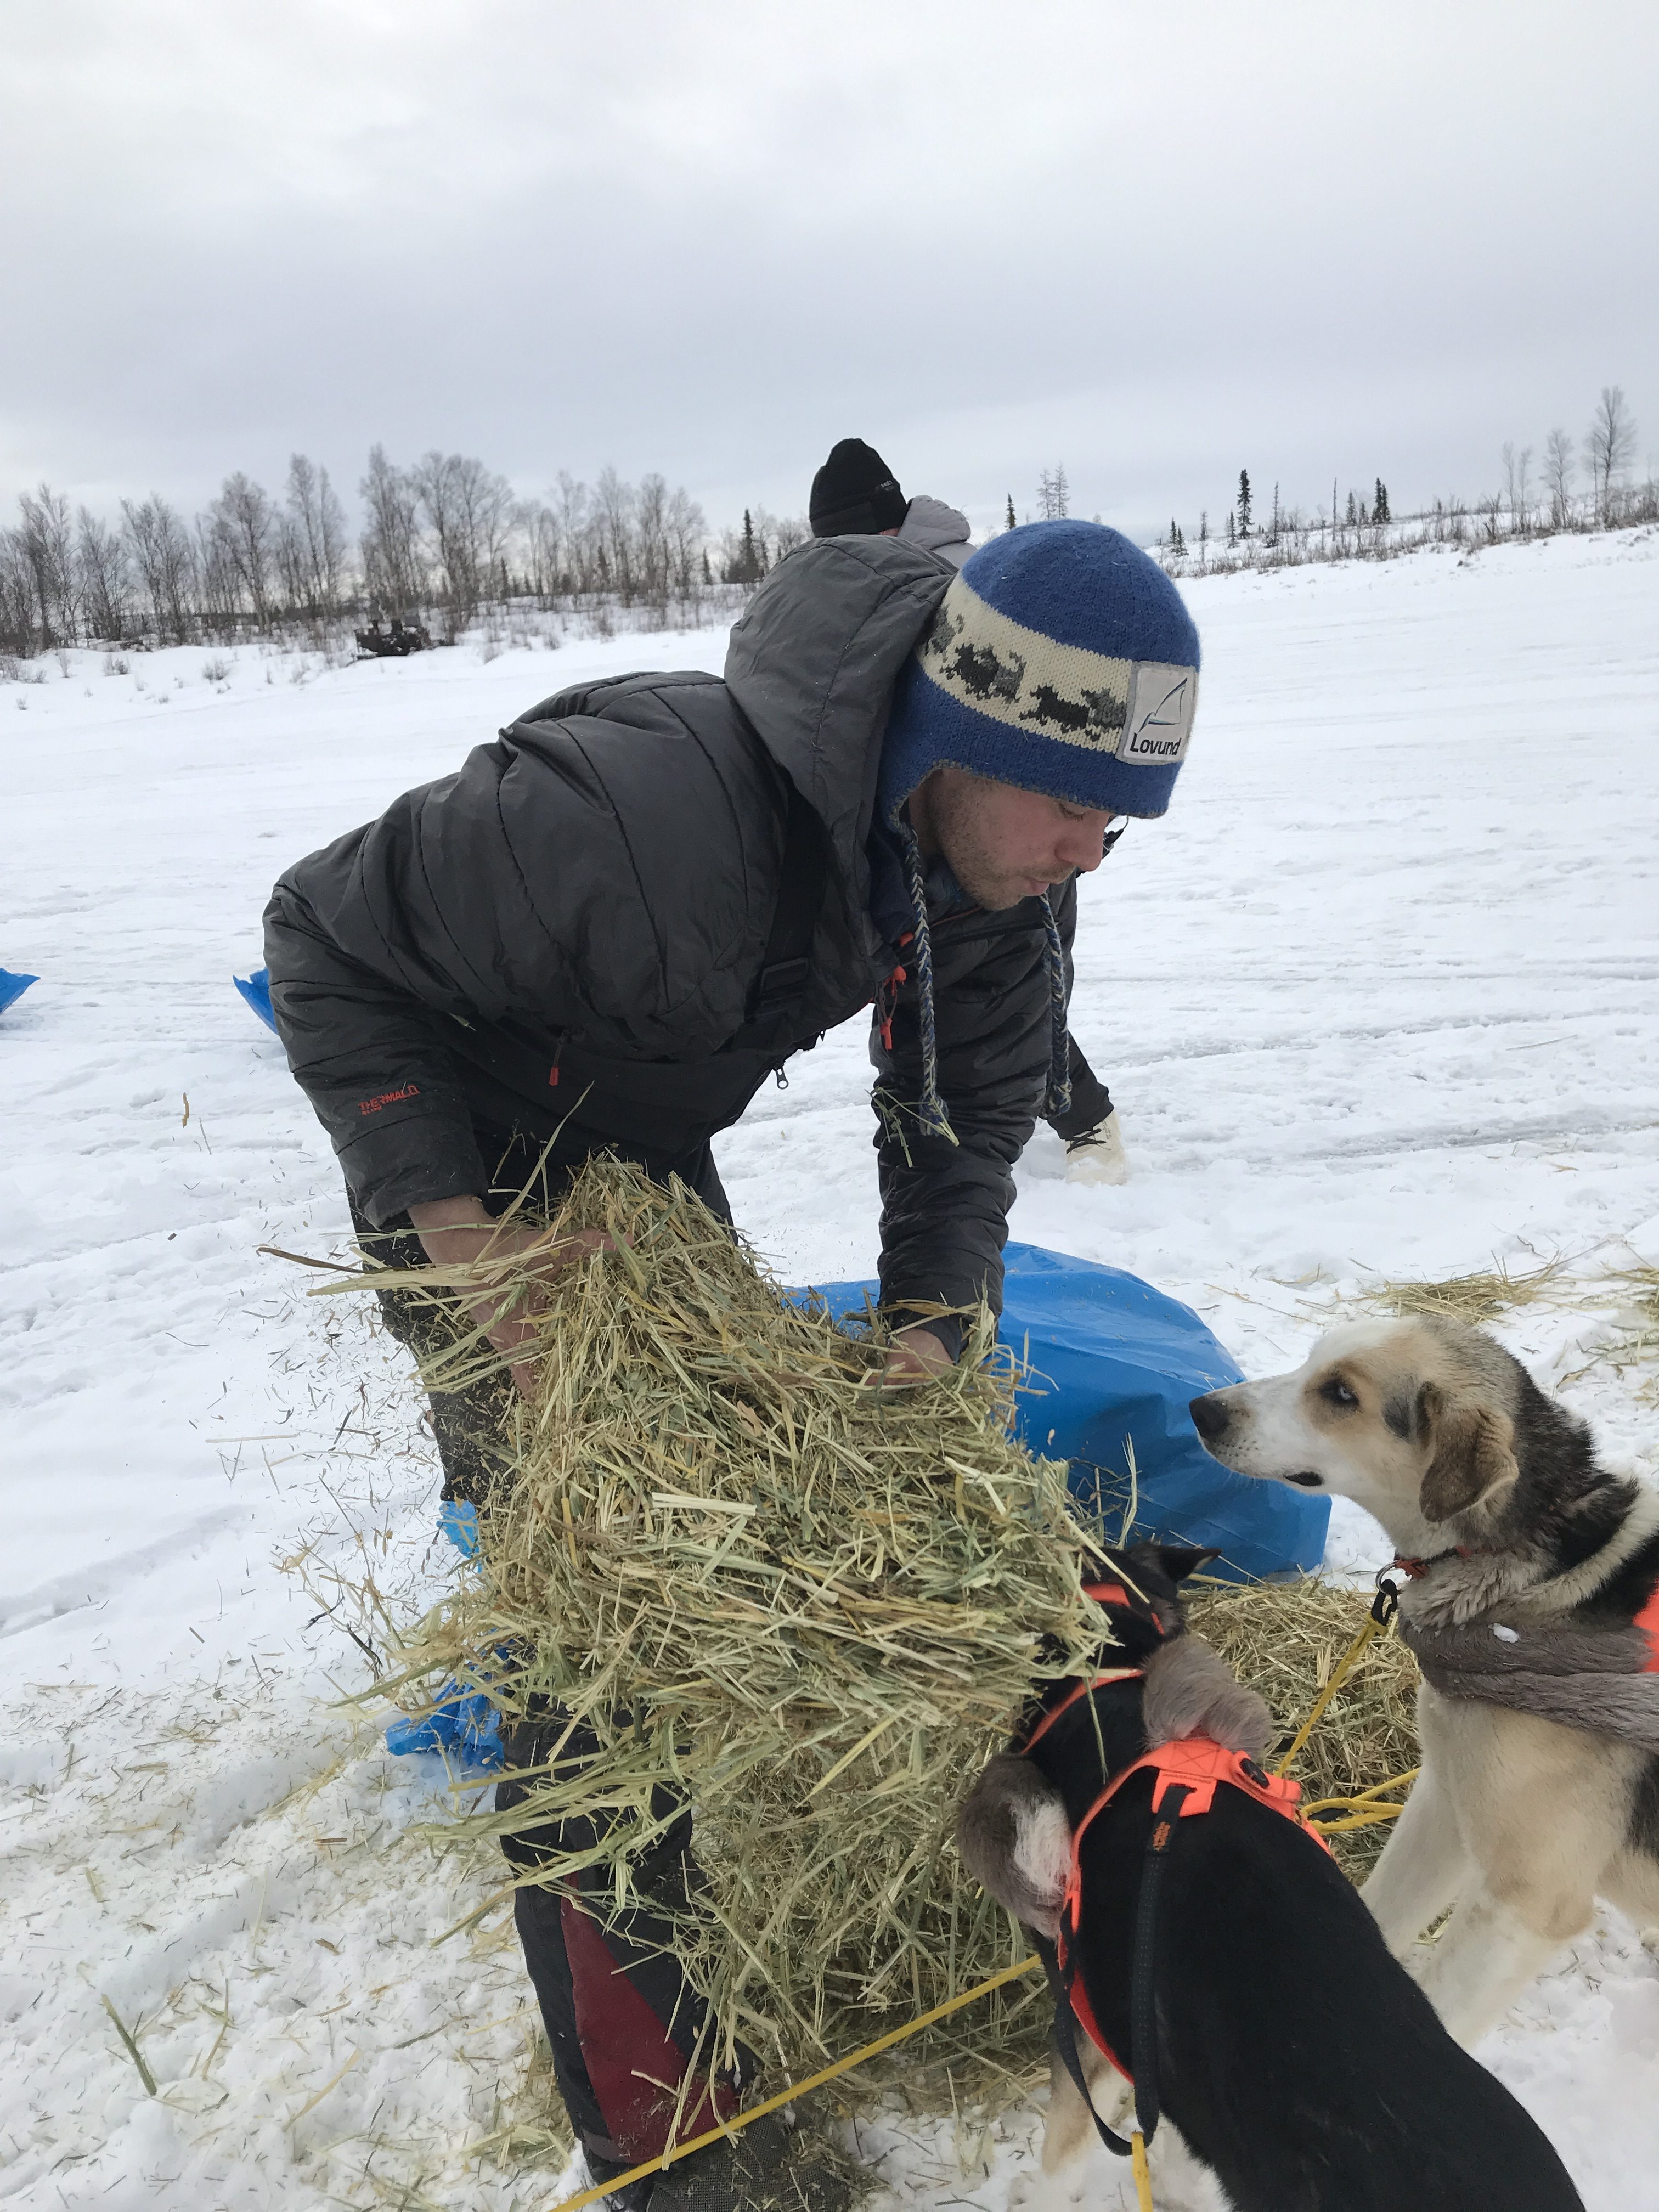 20190307-BJM-Iditarod-Joar-Liefseth-Ulsom-prepares-beds-for-his-team-e1552085219203.jpg